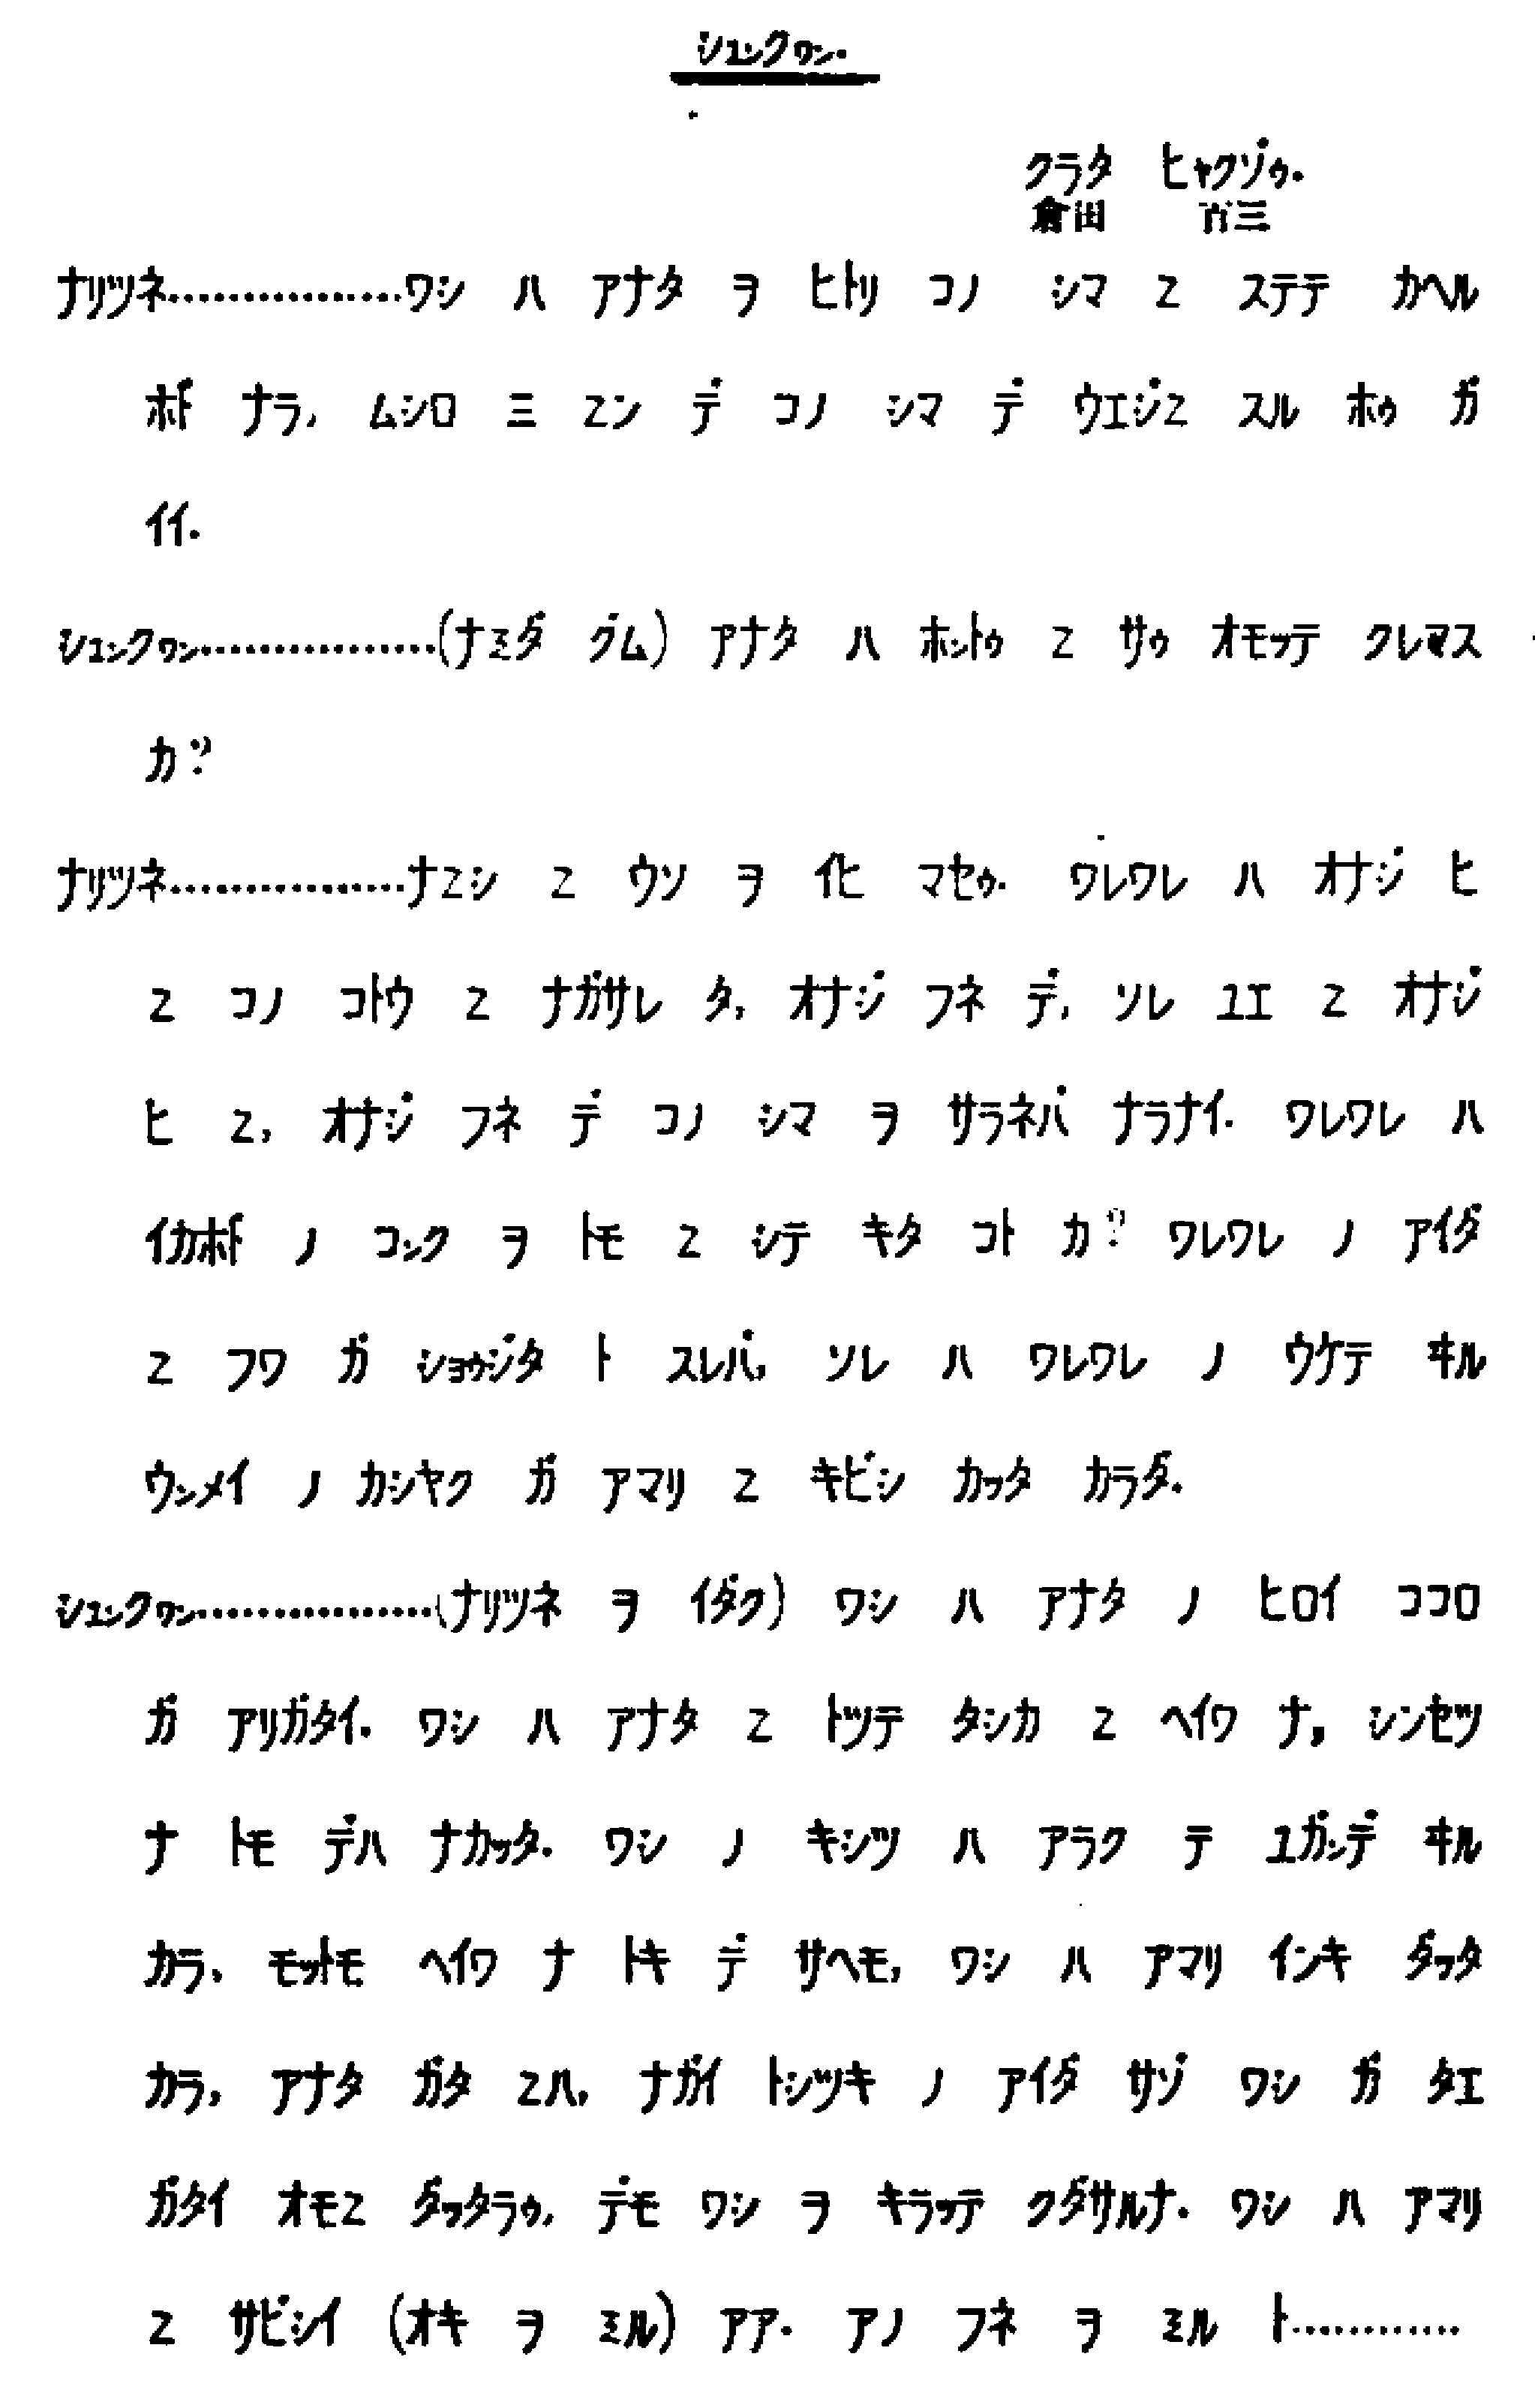 山下が試作したカタカナ活字の印字見本（1916年6月）